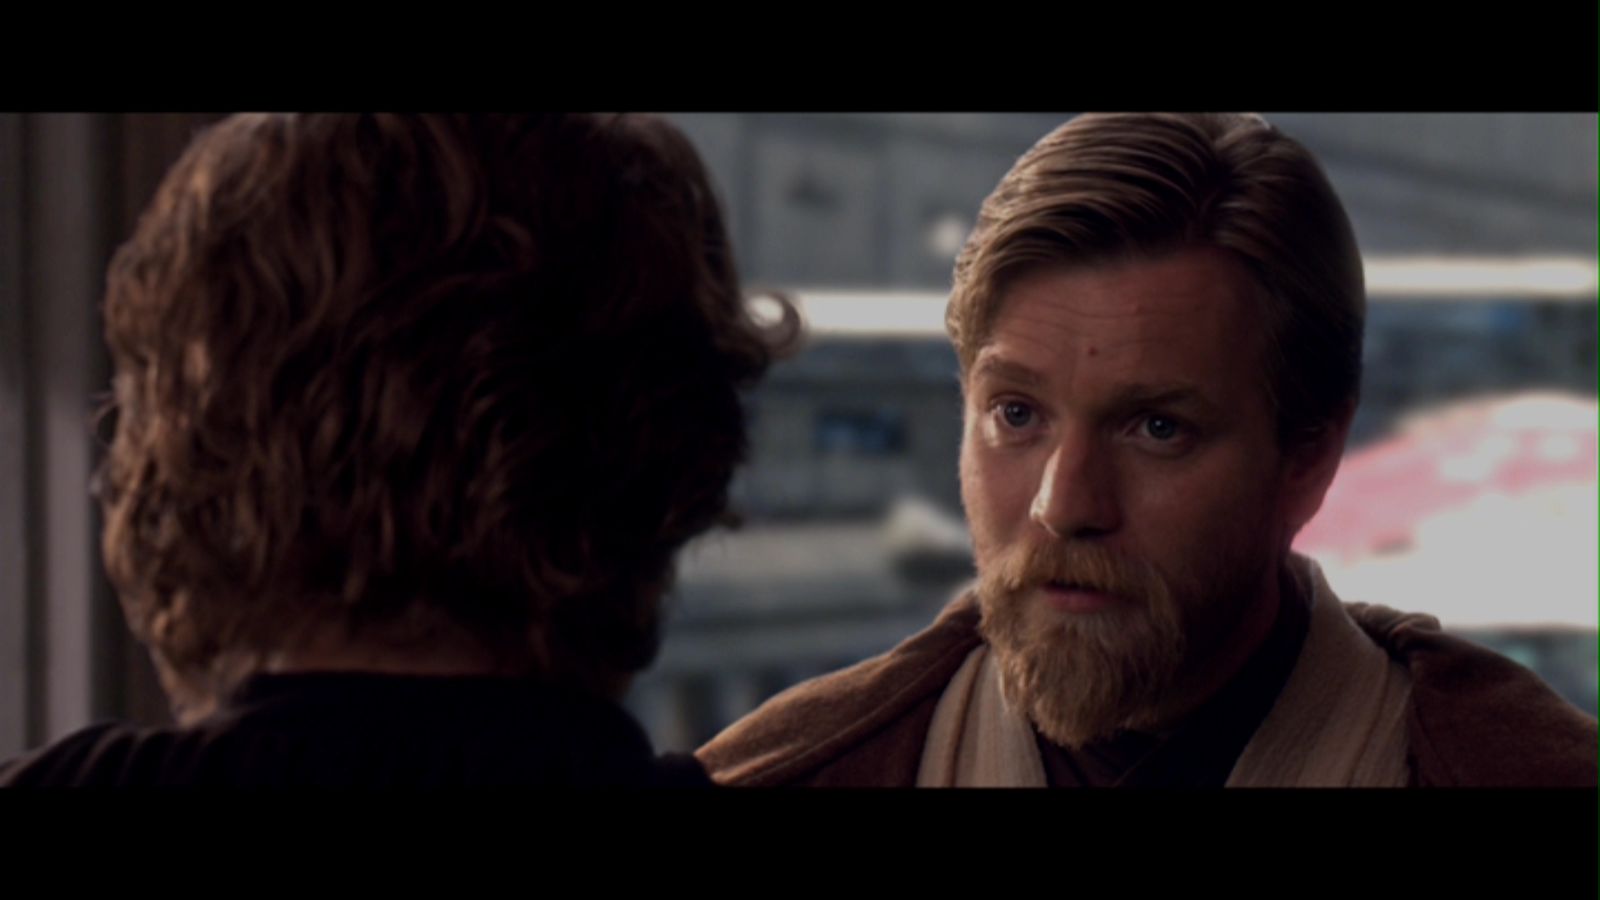 Obi-Wan Kenobi /Revenge Of The Sith - Obi-Wan Kenobi Image (23983669 ...